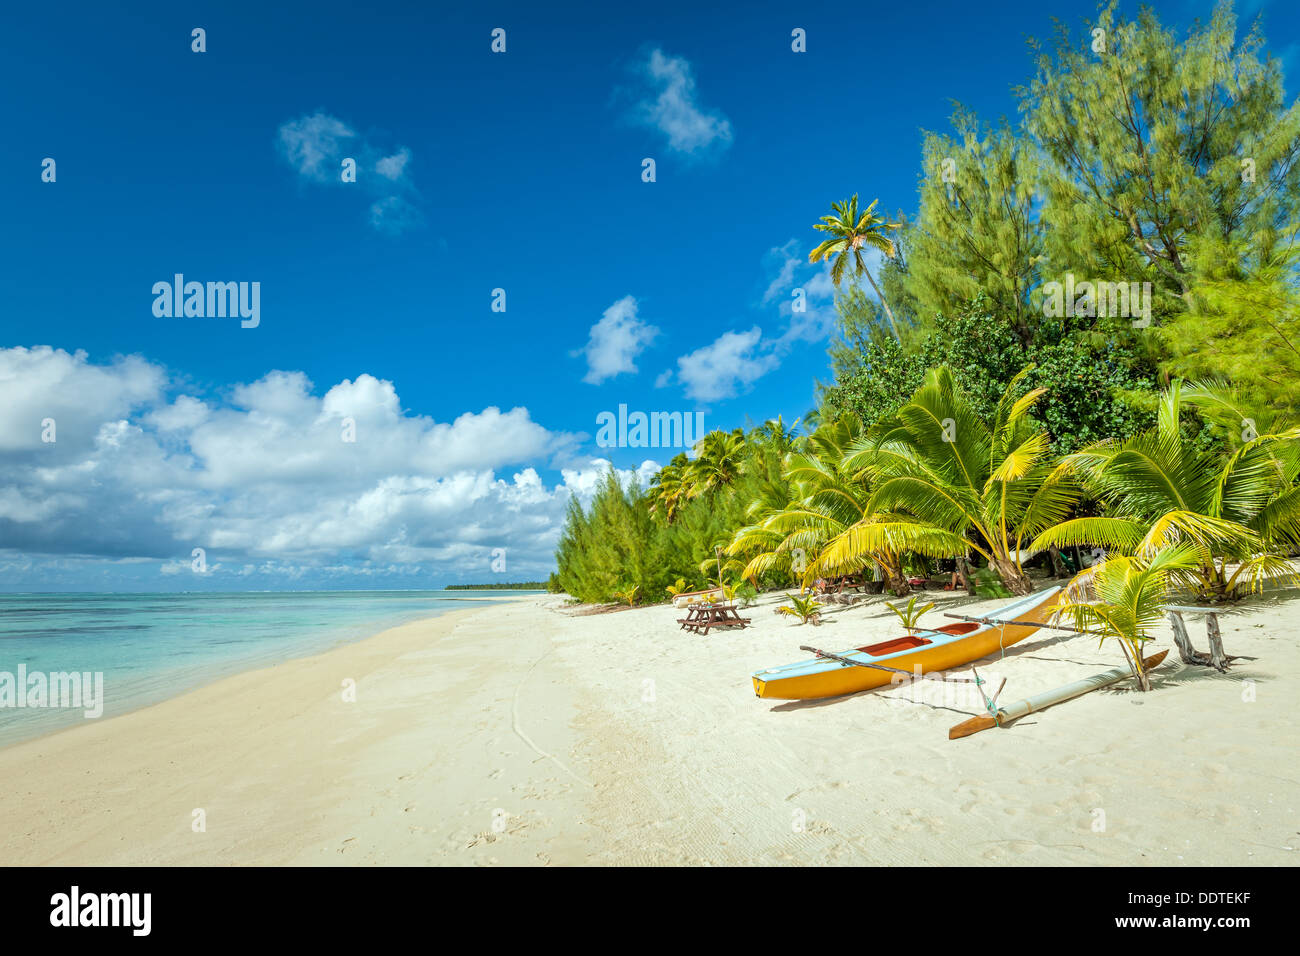 Isole di Cook, isola di Aitutaki, polinesiano Canoe sulla spiaggia di sabbia bianca con acque turchesi e le palme in un paradiso tropicale Foto Stock